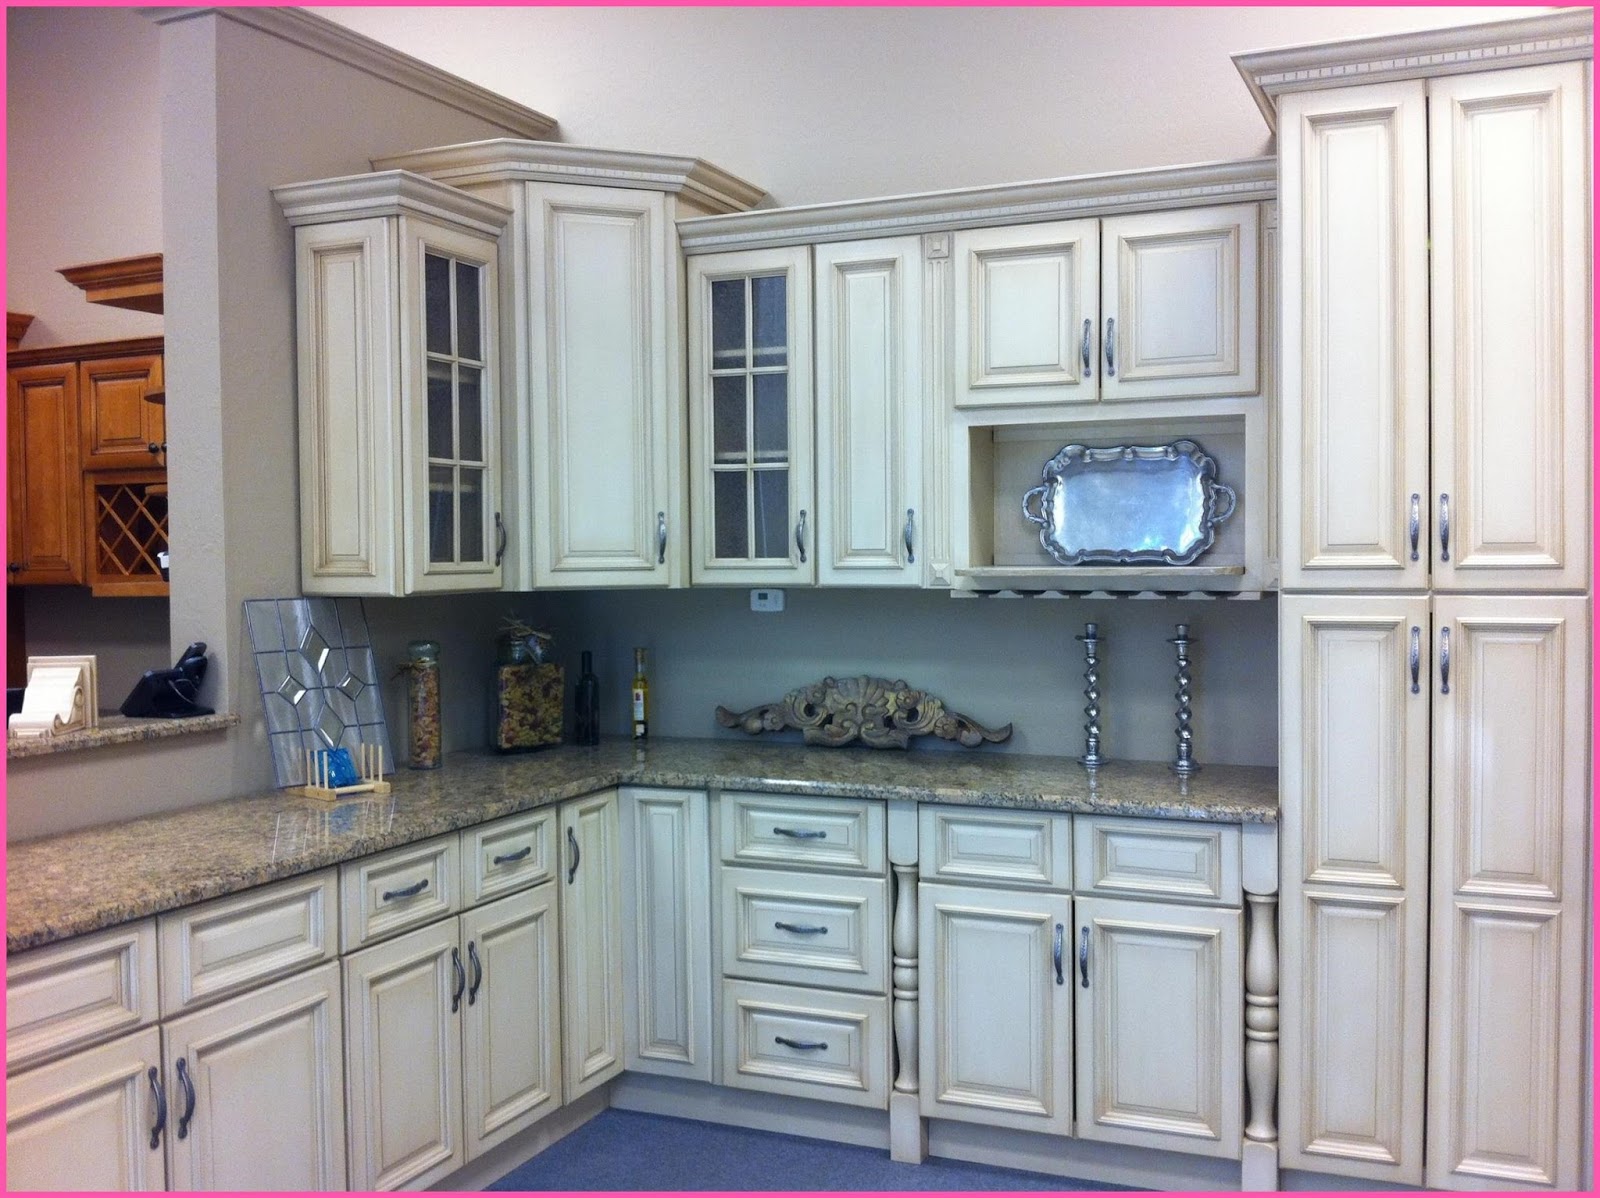 15 Kitchen Nook Cabinets Kitchen Backsplash Ideas White Cabinets Brown Countertop  Kitchen,Nook,Cabinets